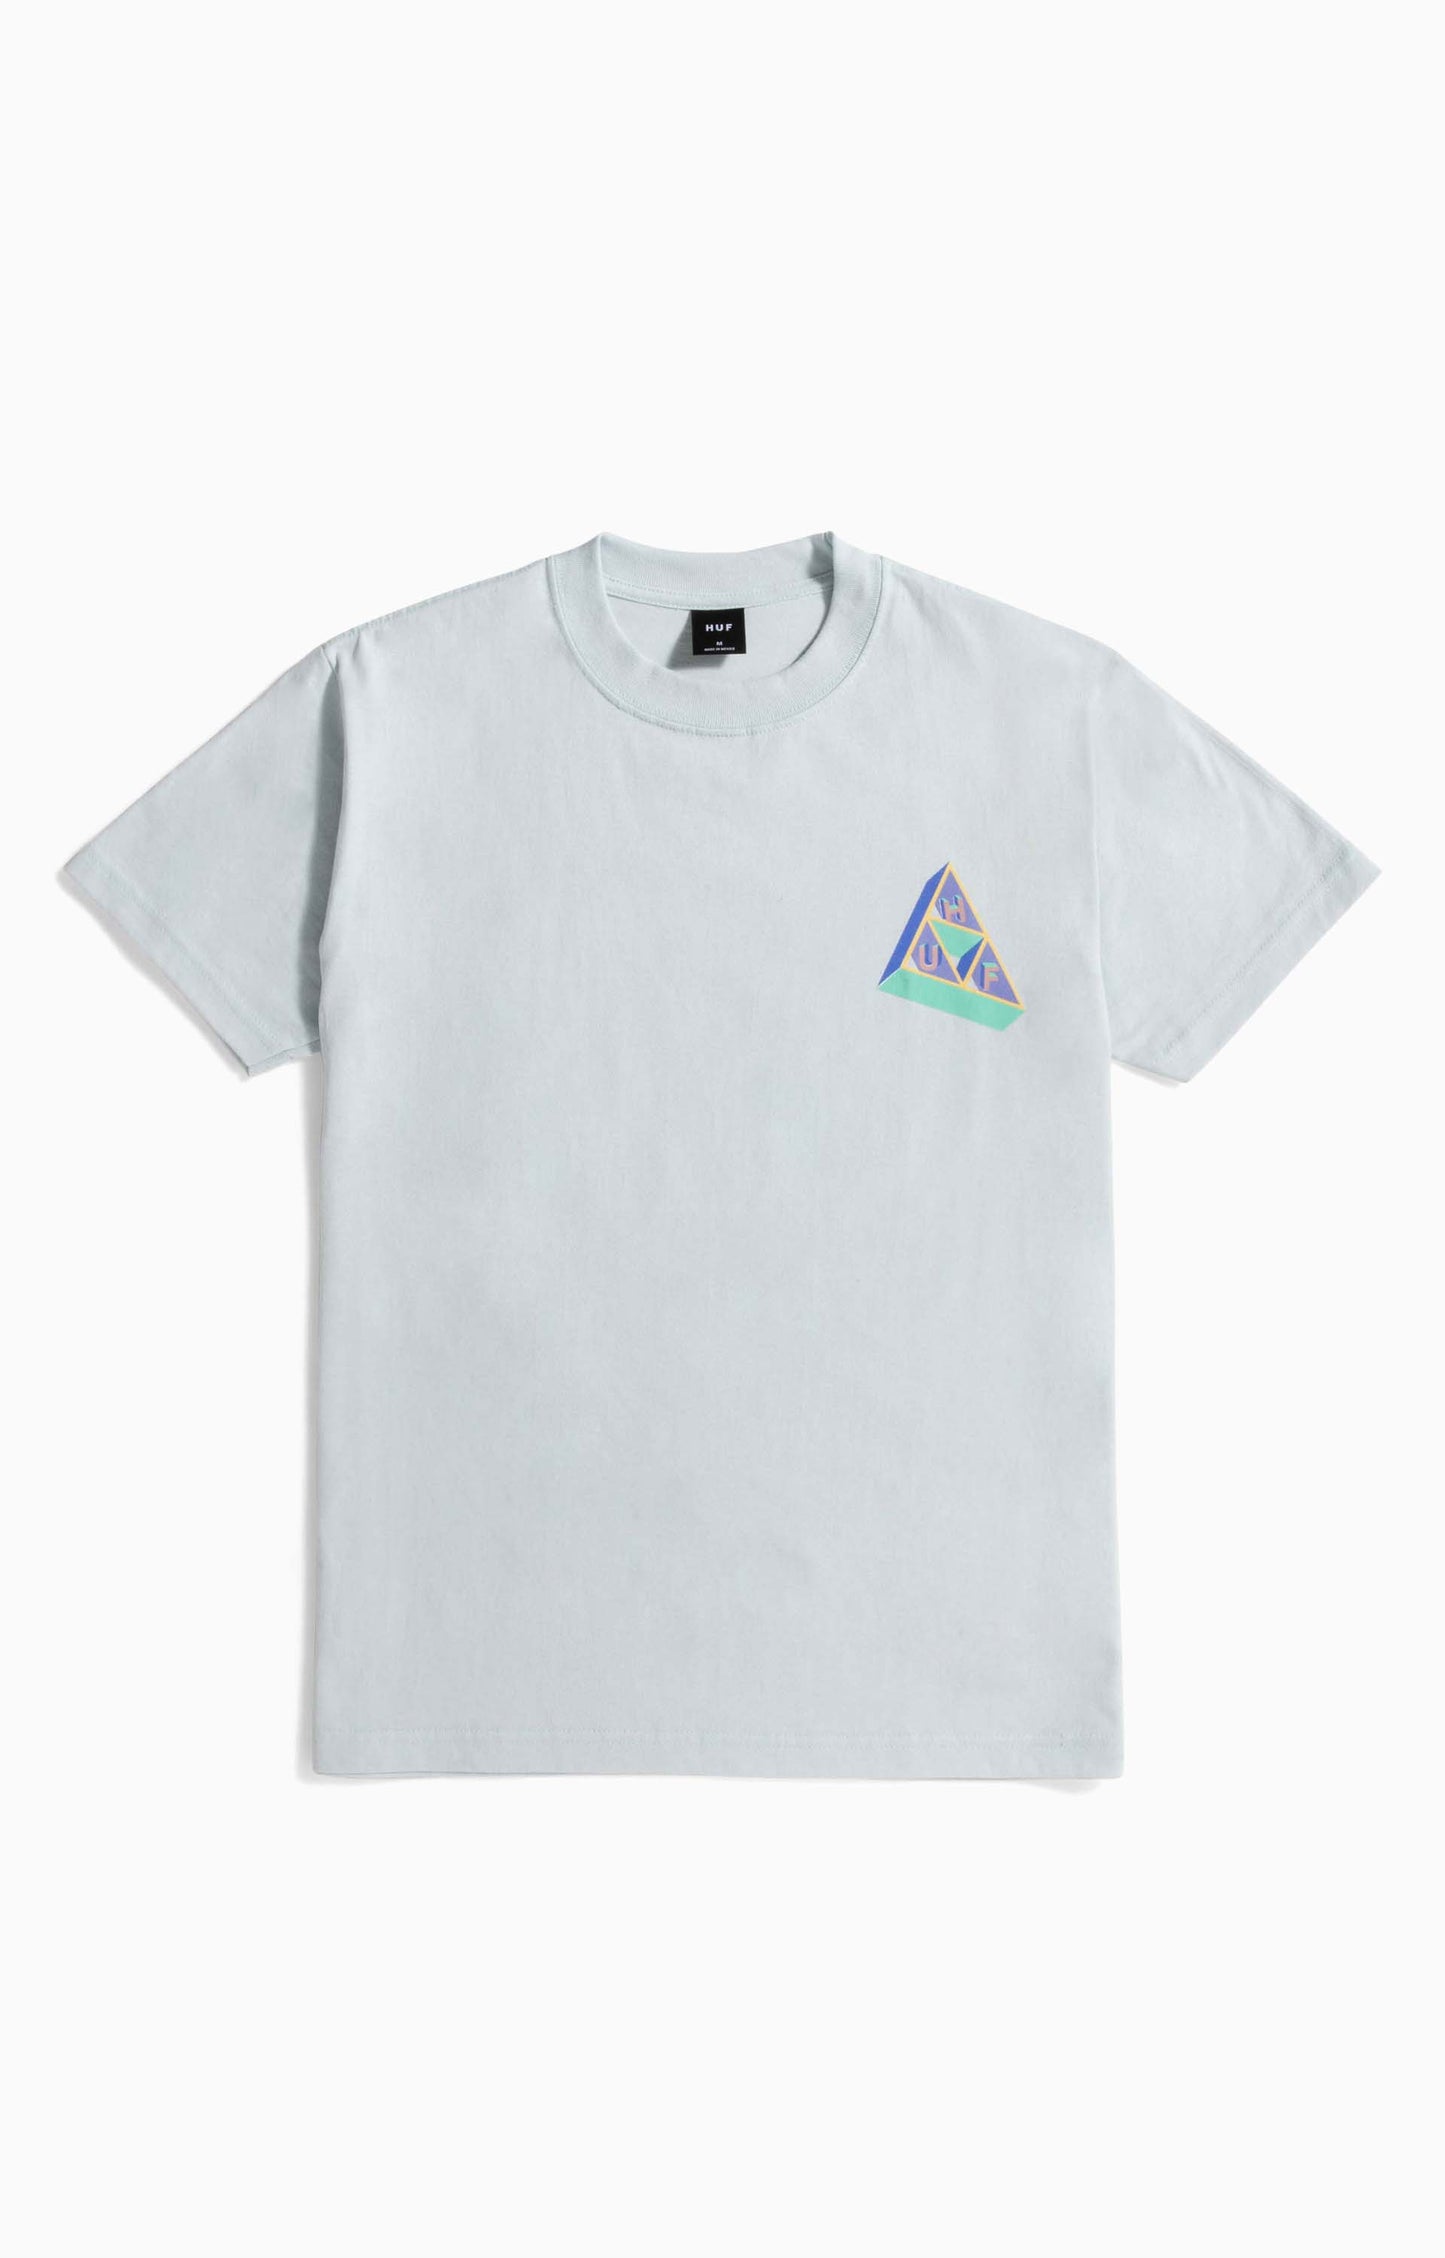 Huf Based Triple Triangle T-Shirt, Sky Blue